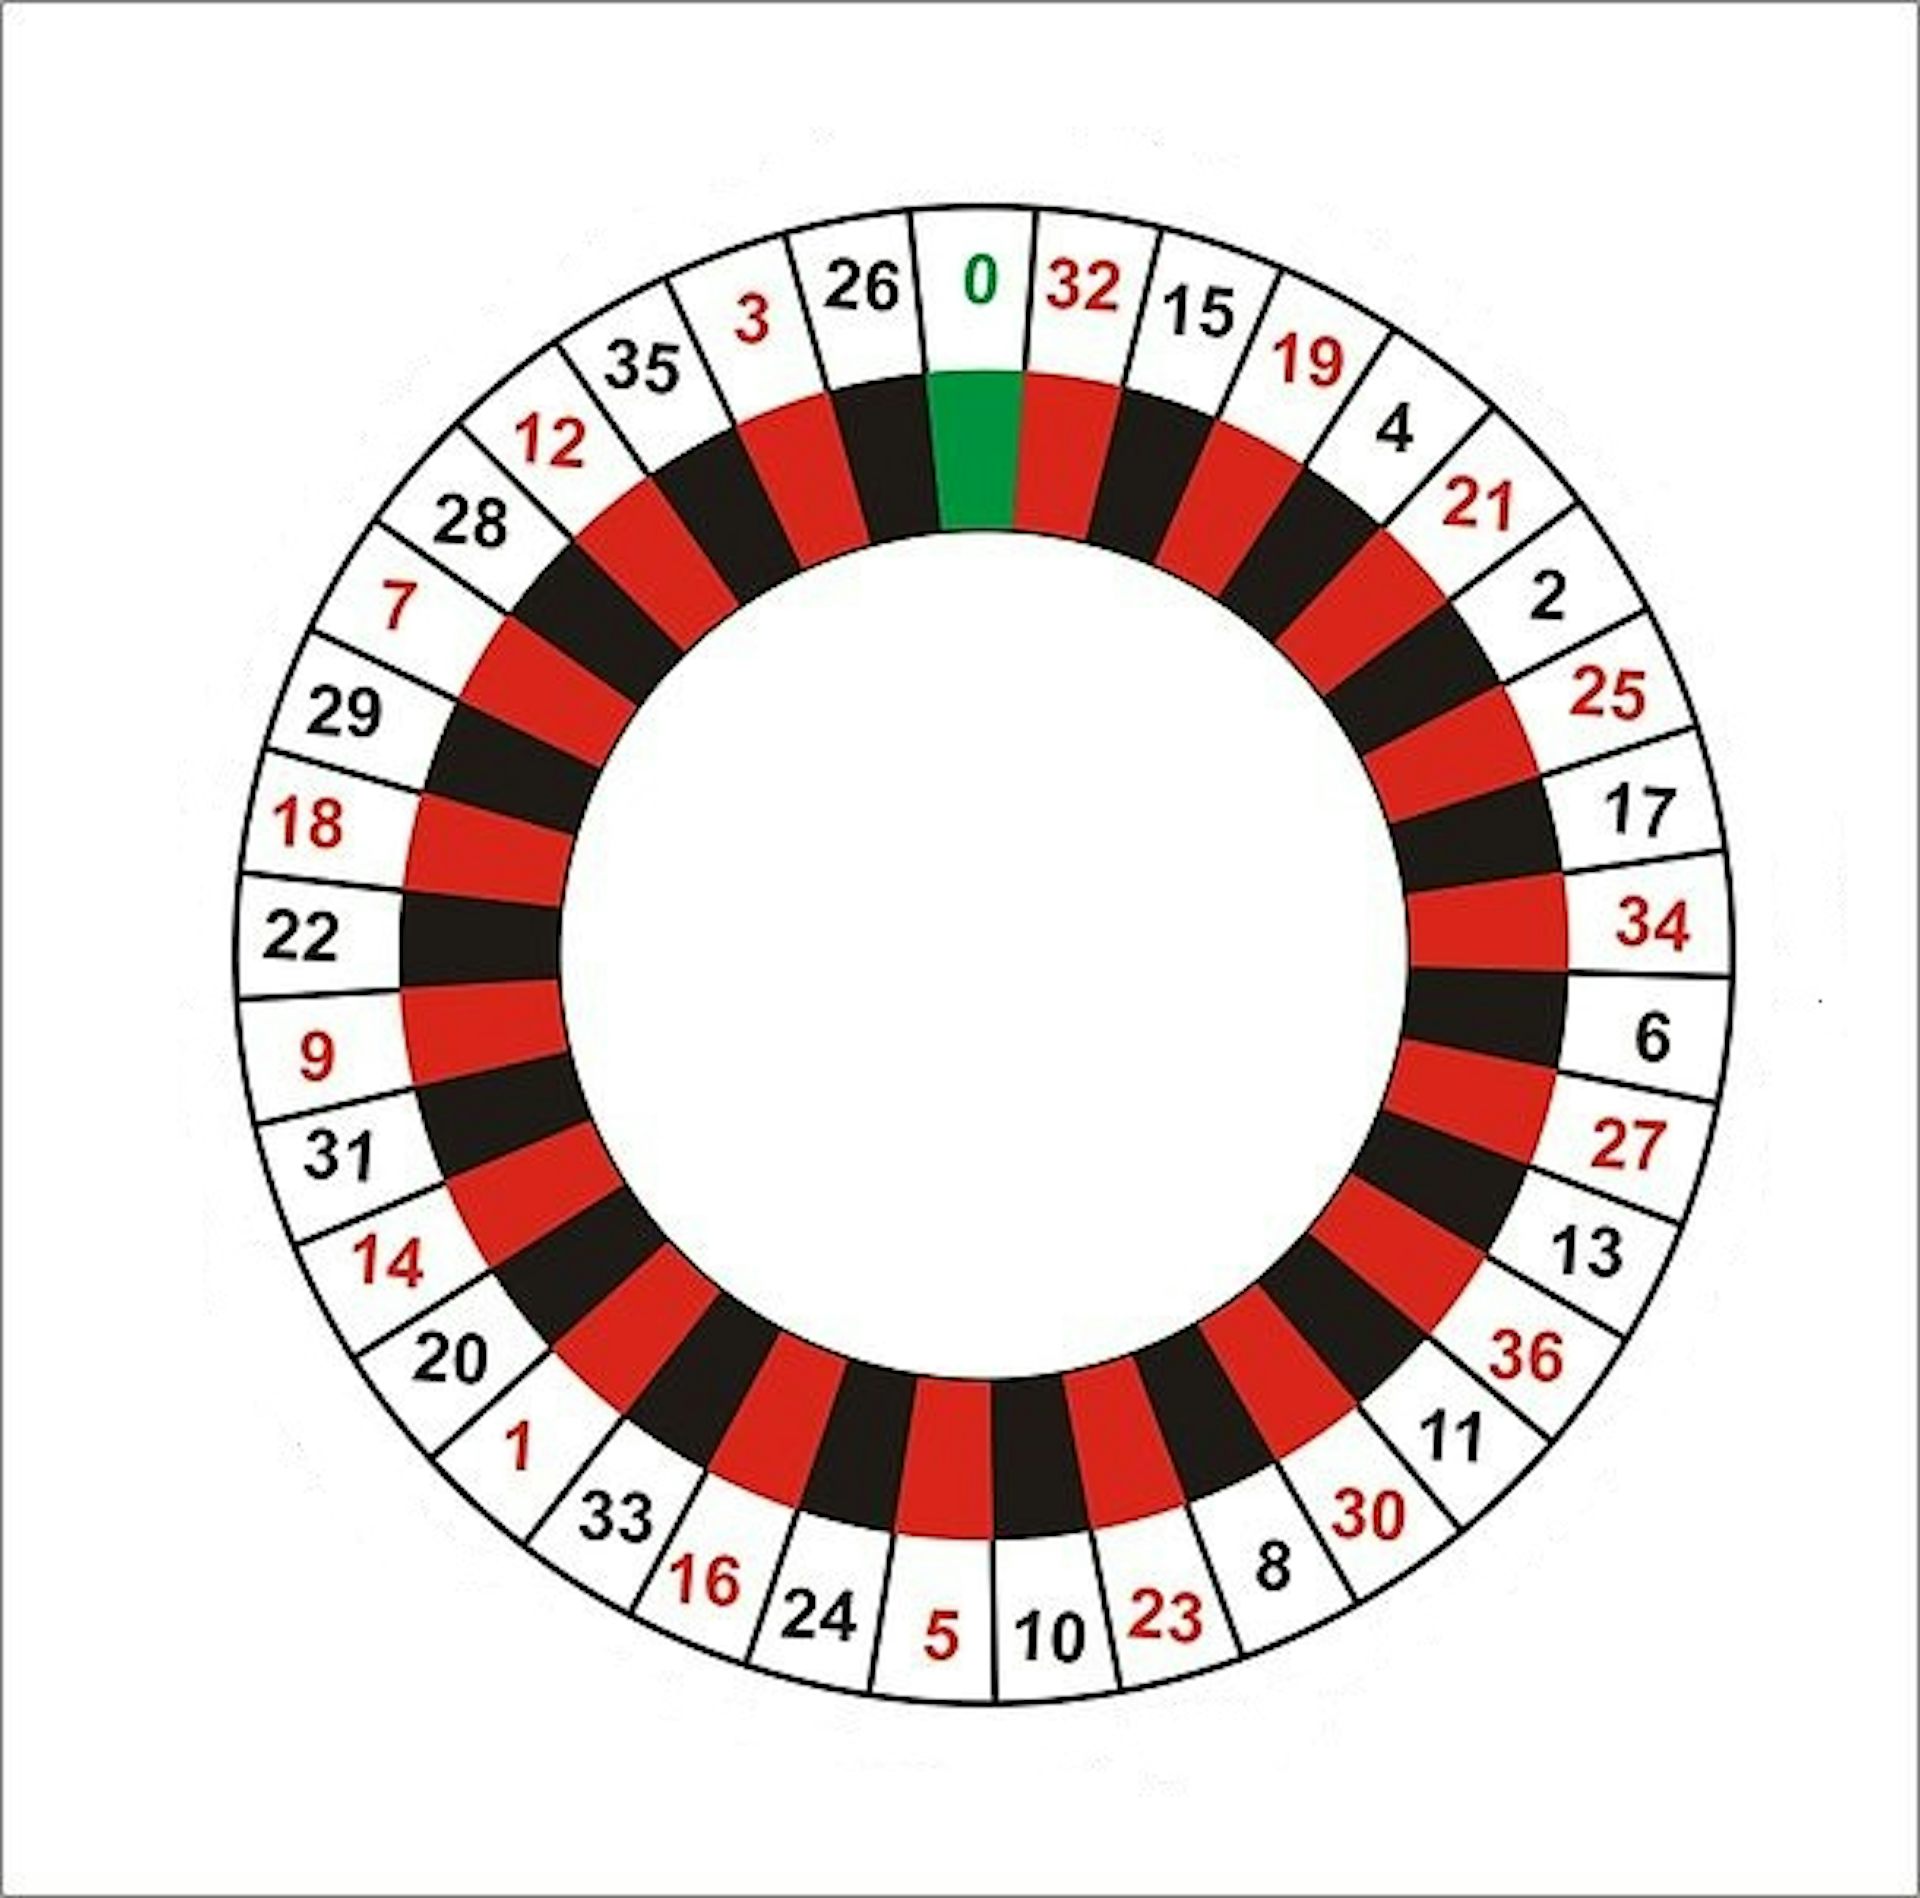 standard roulette wheel layout